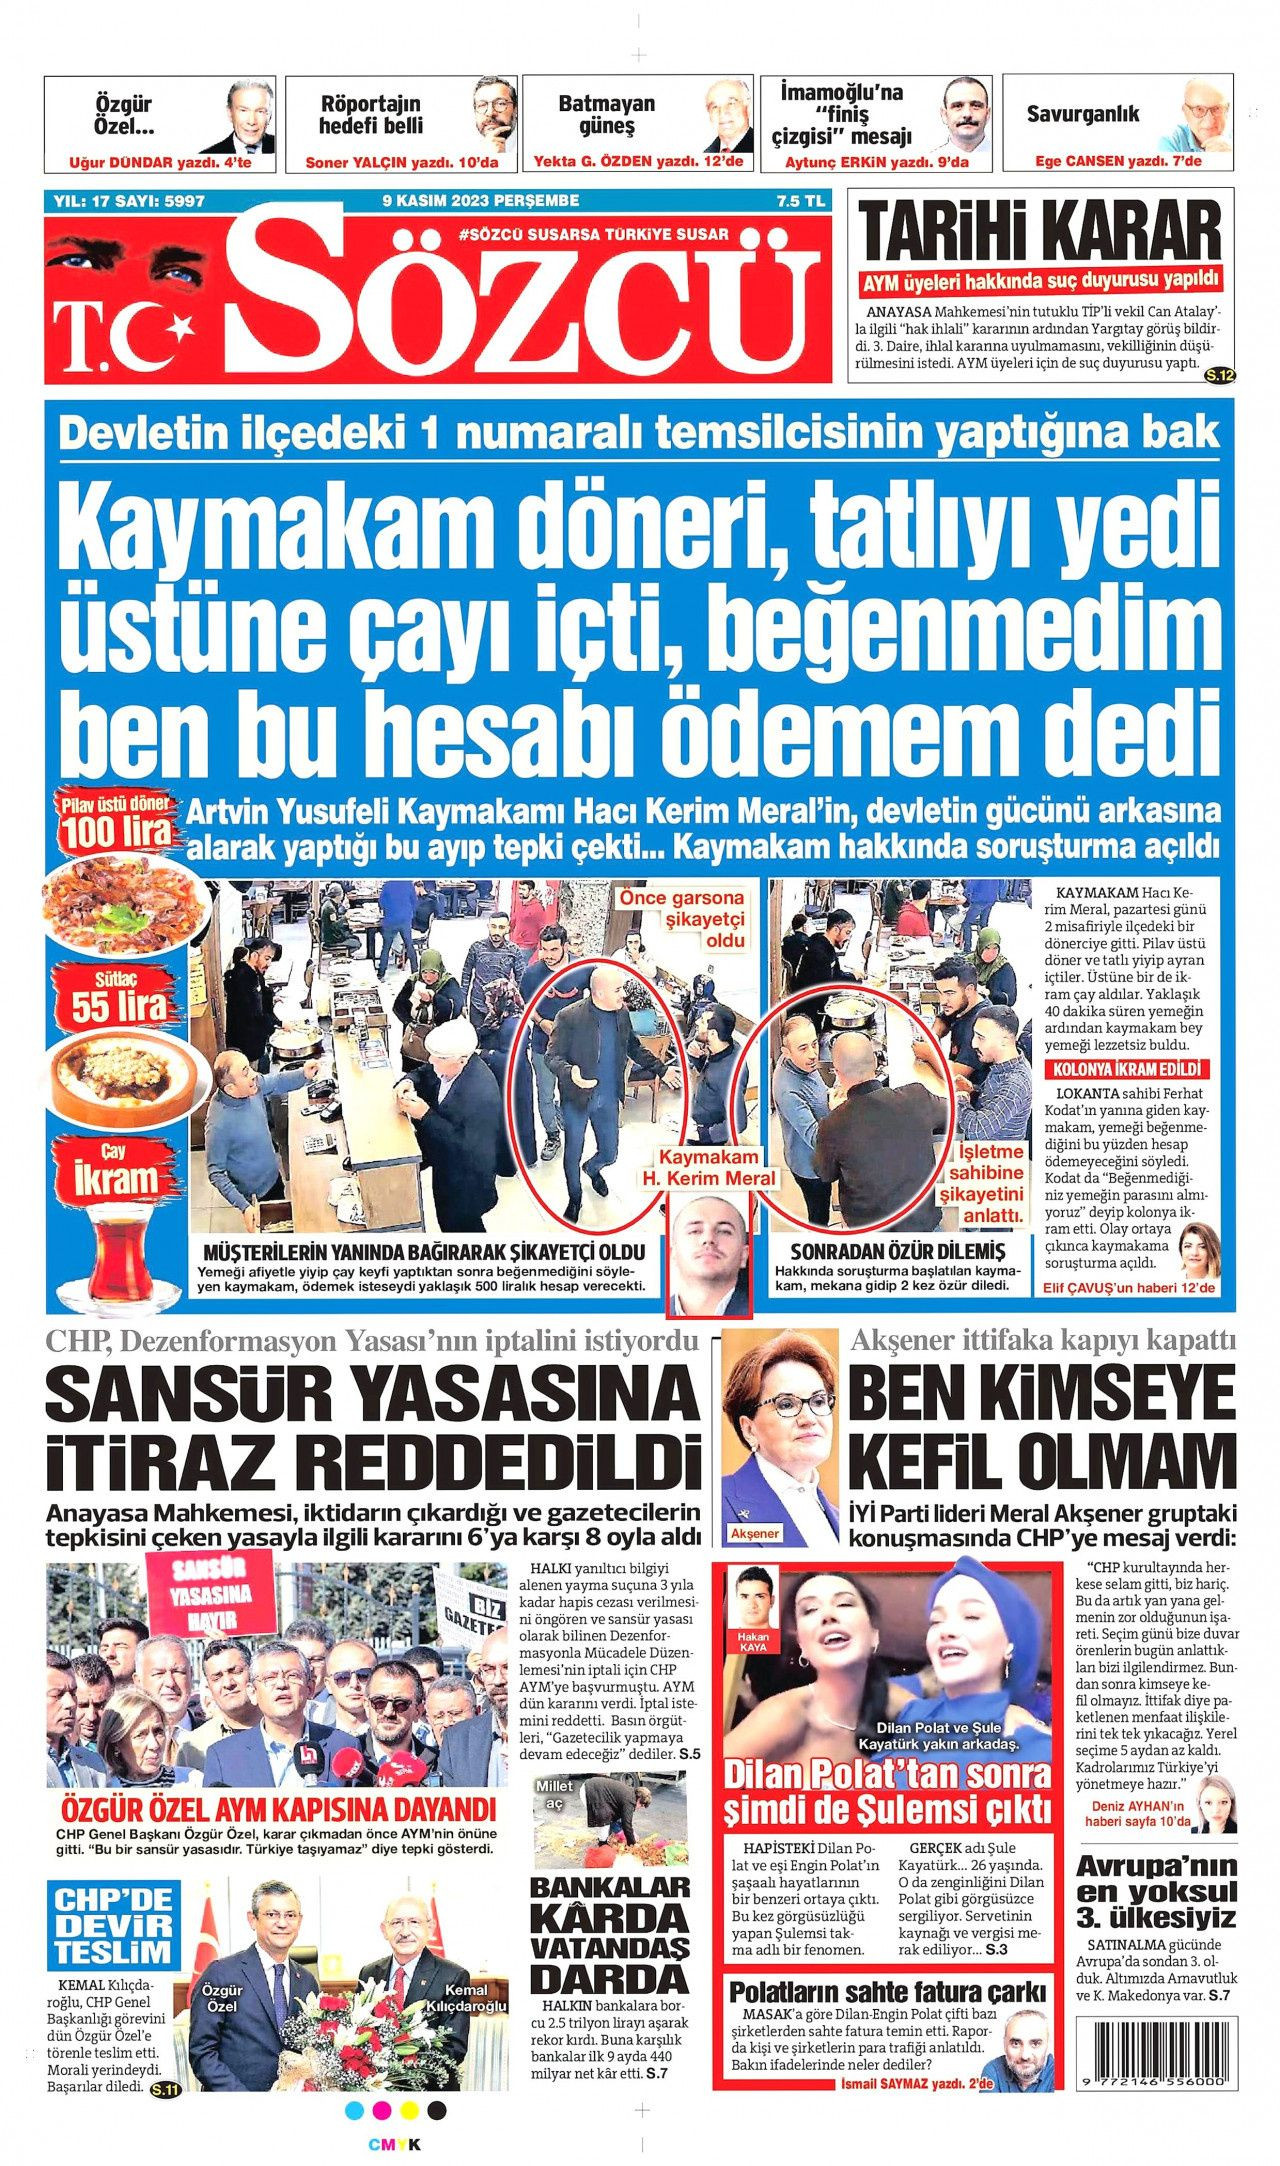 Günün manşetleri: Anayasa Mahkemesi kapatıldı - Sayfa 3